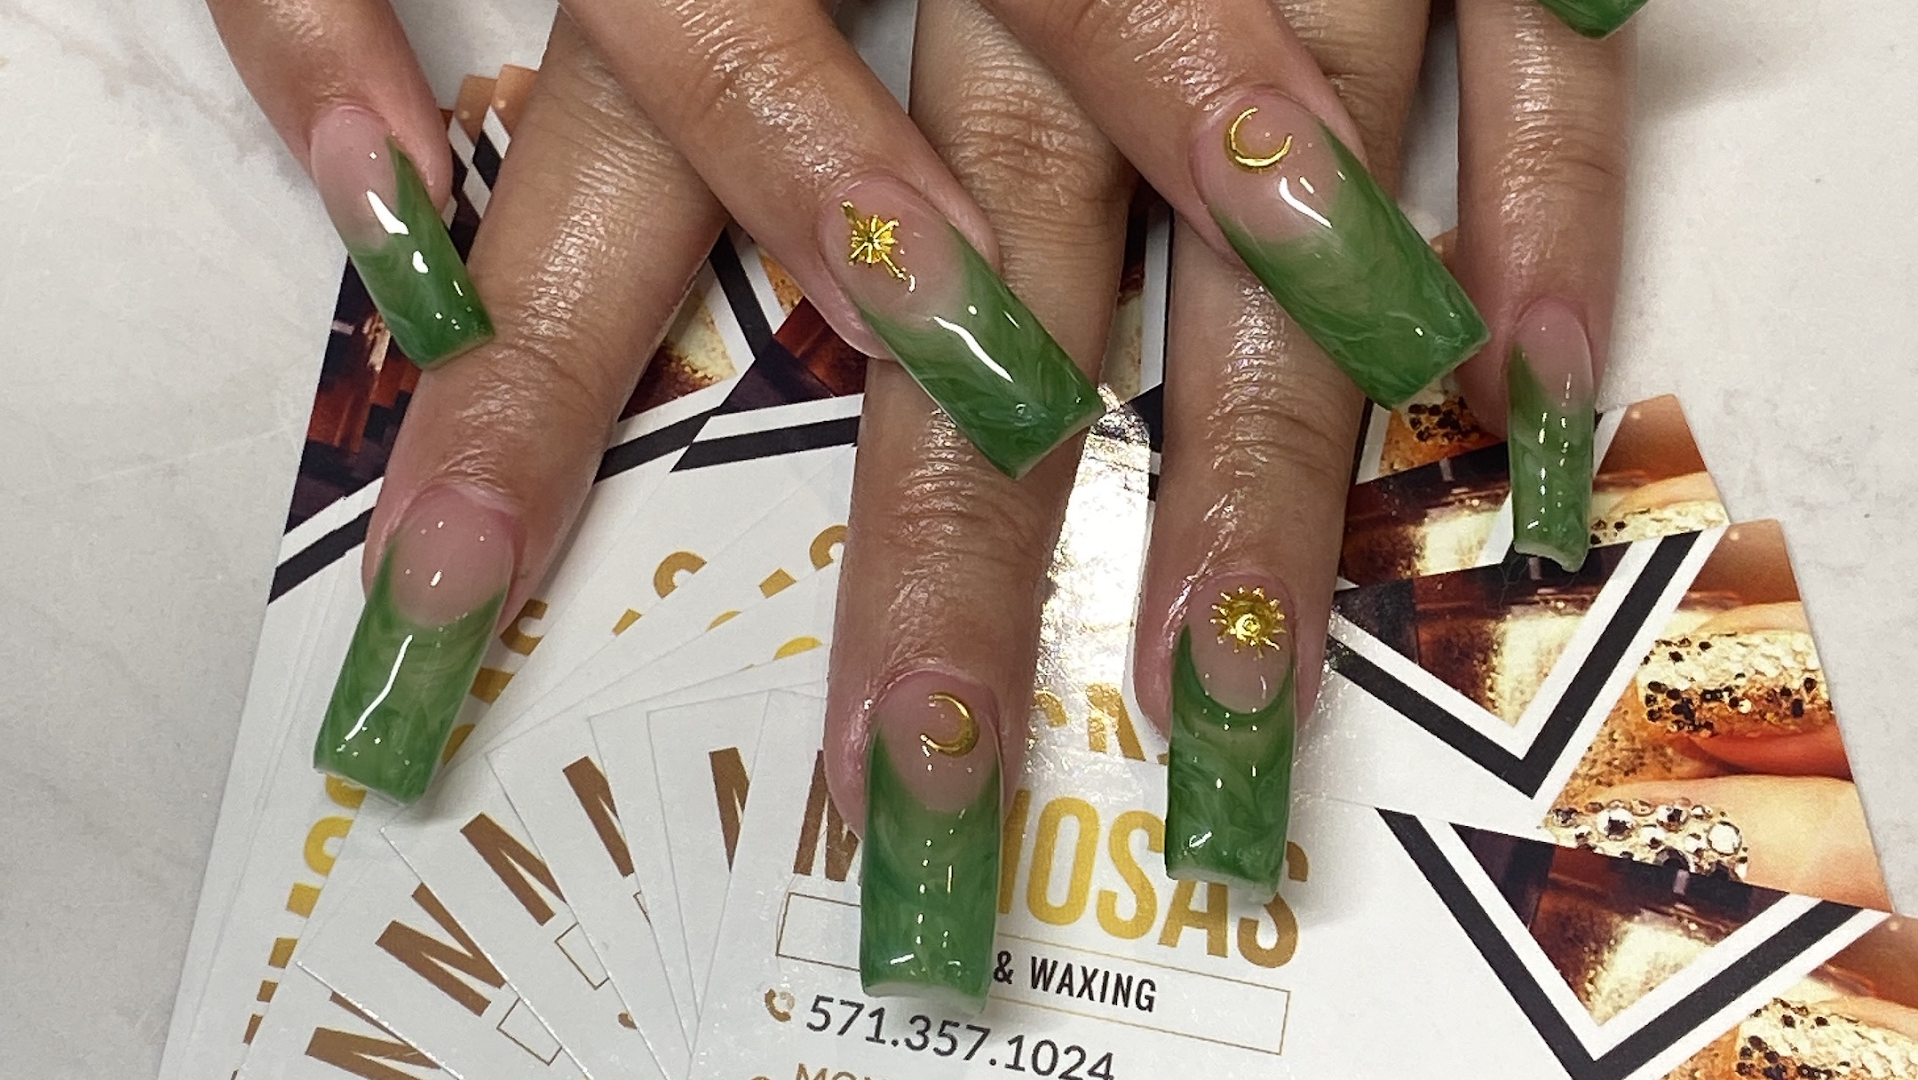 Mimosa Beauty Salon